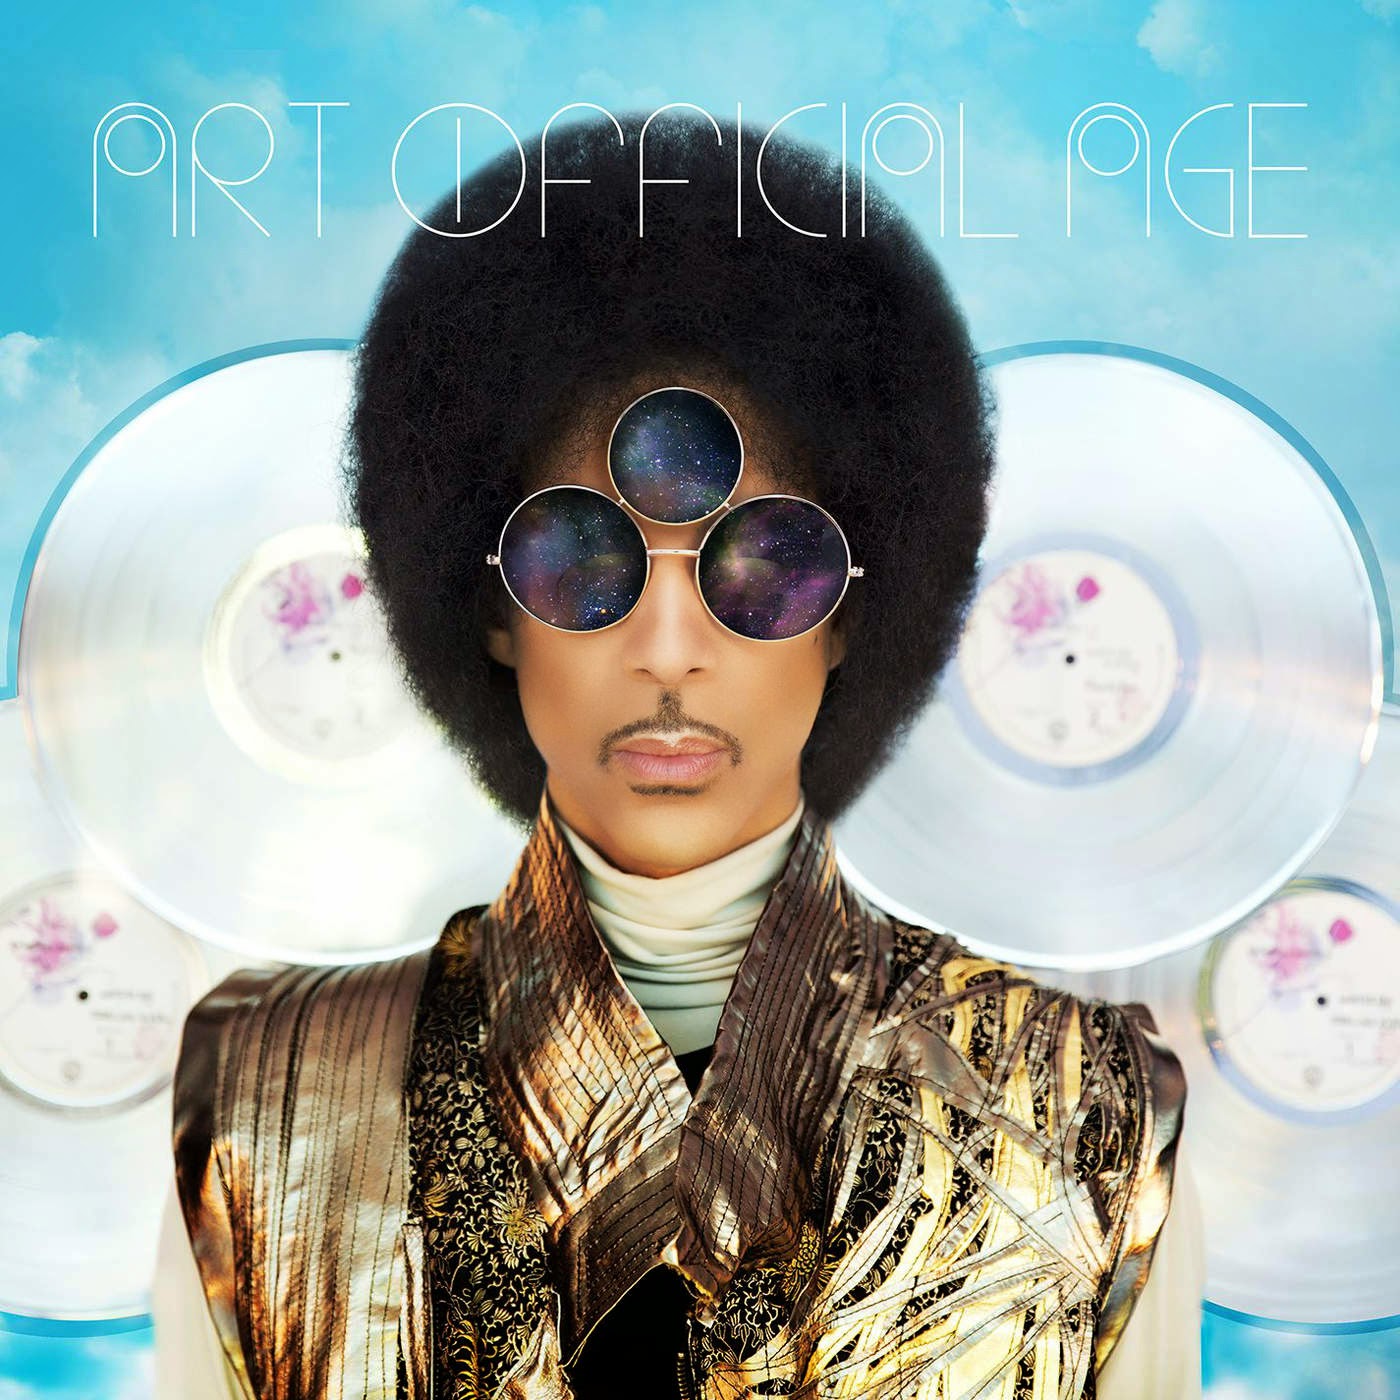 Viaje alucinante al fondo de la mente de Prince